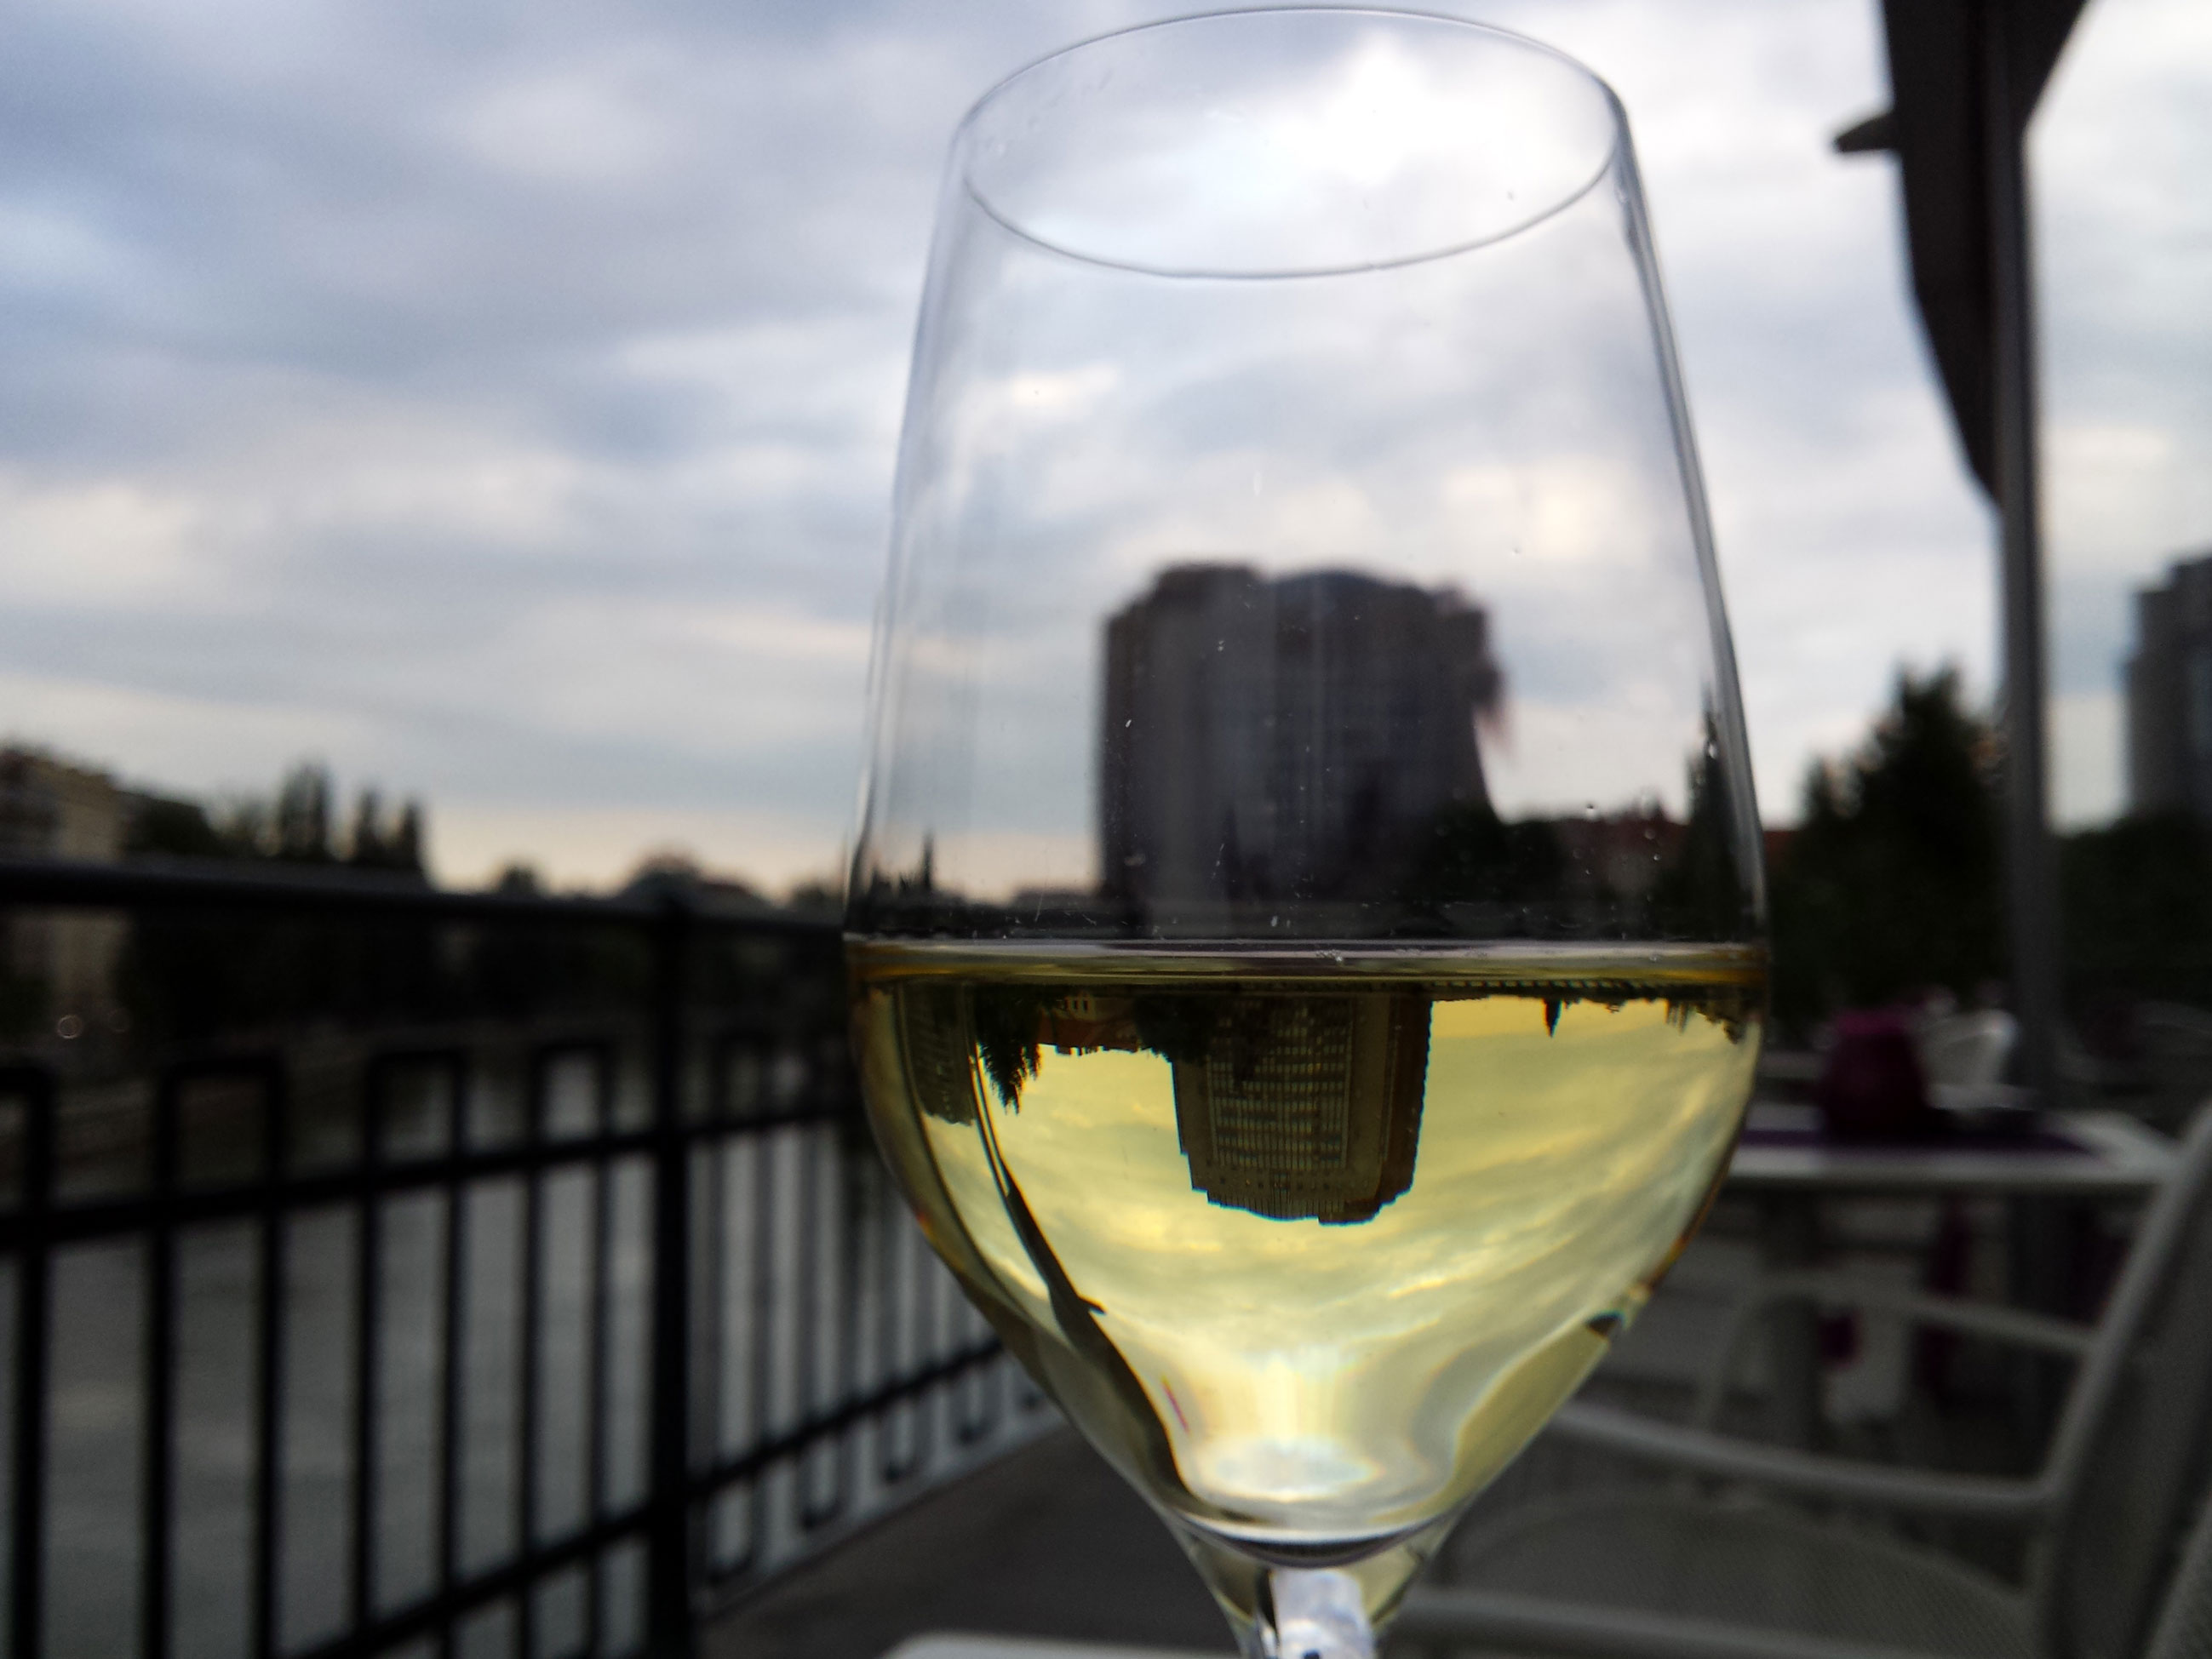 wine-glass